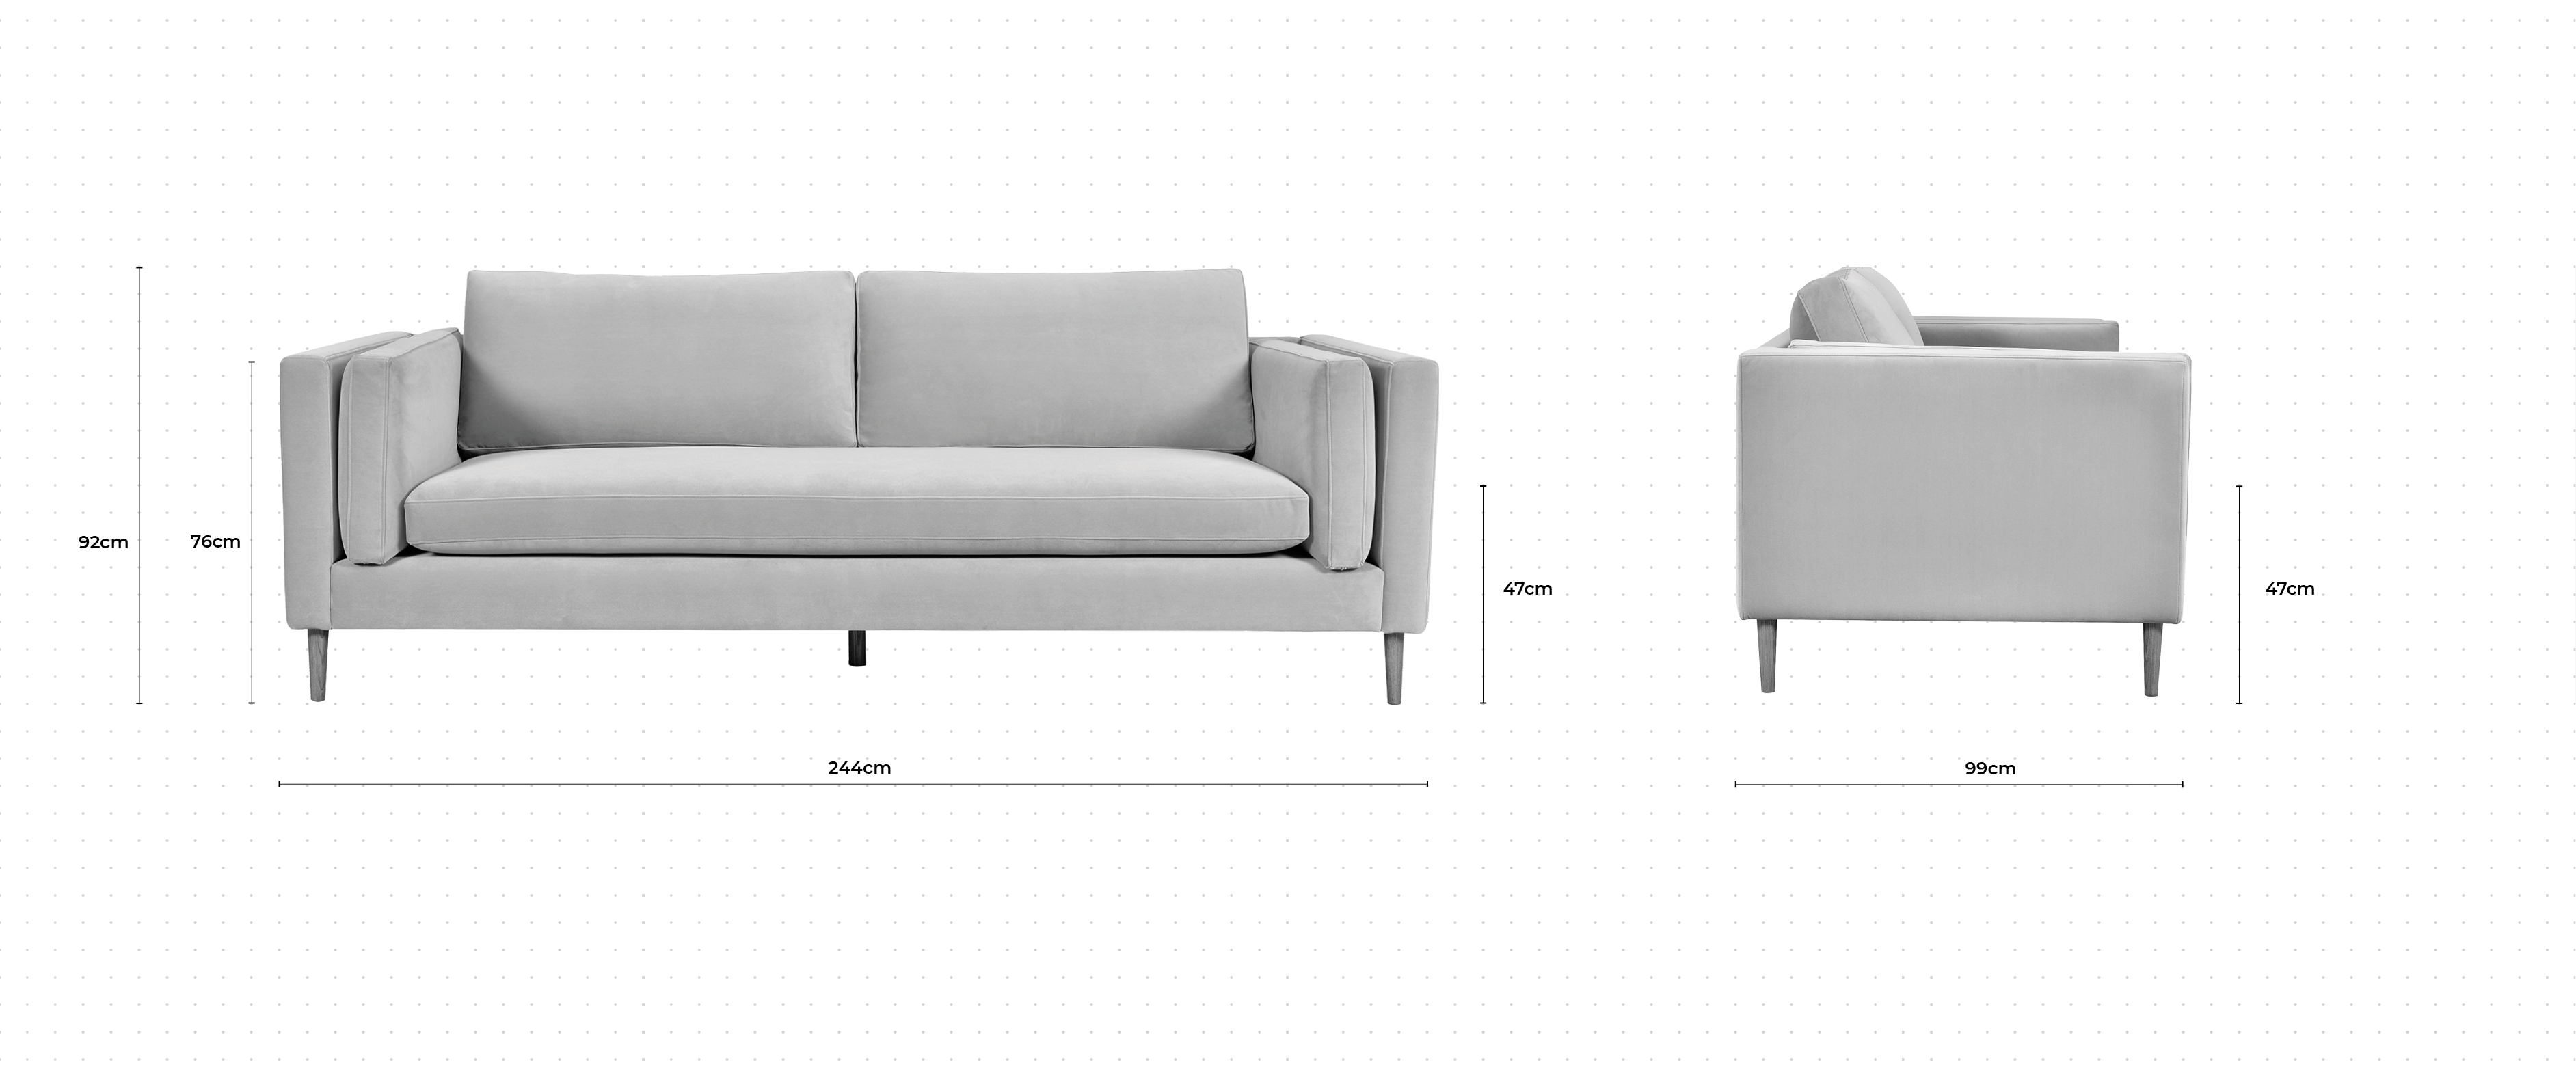 Eden 3 Seater Sofa dimensions